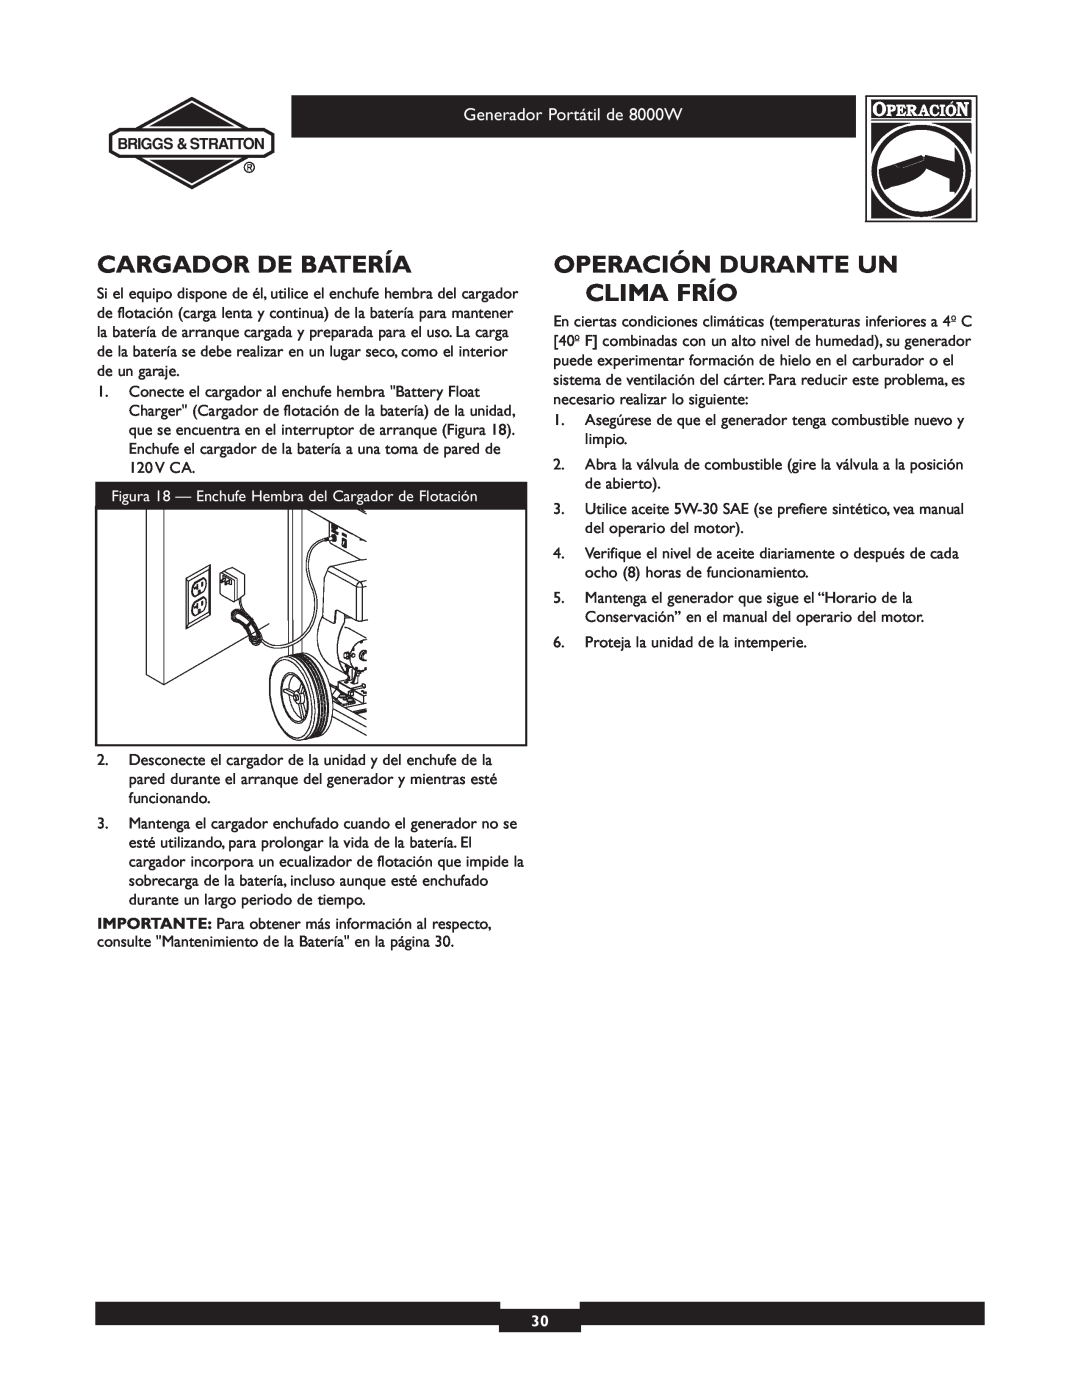 Briggs & Stratton 030210-2 manual Cargador De Batería, Operación Durante Un Clima Frío, Generador Portátil de 8000W 